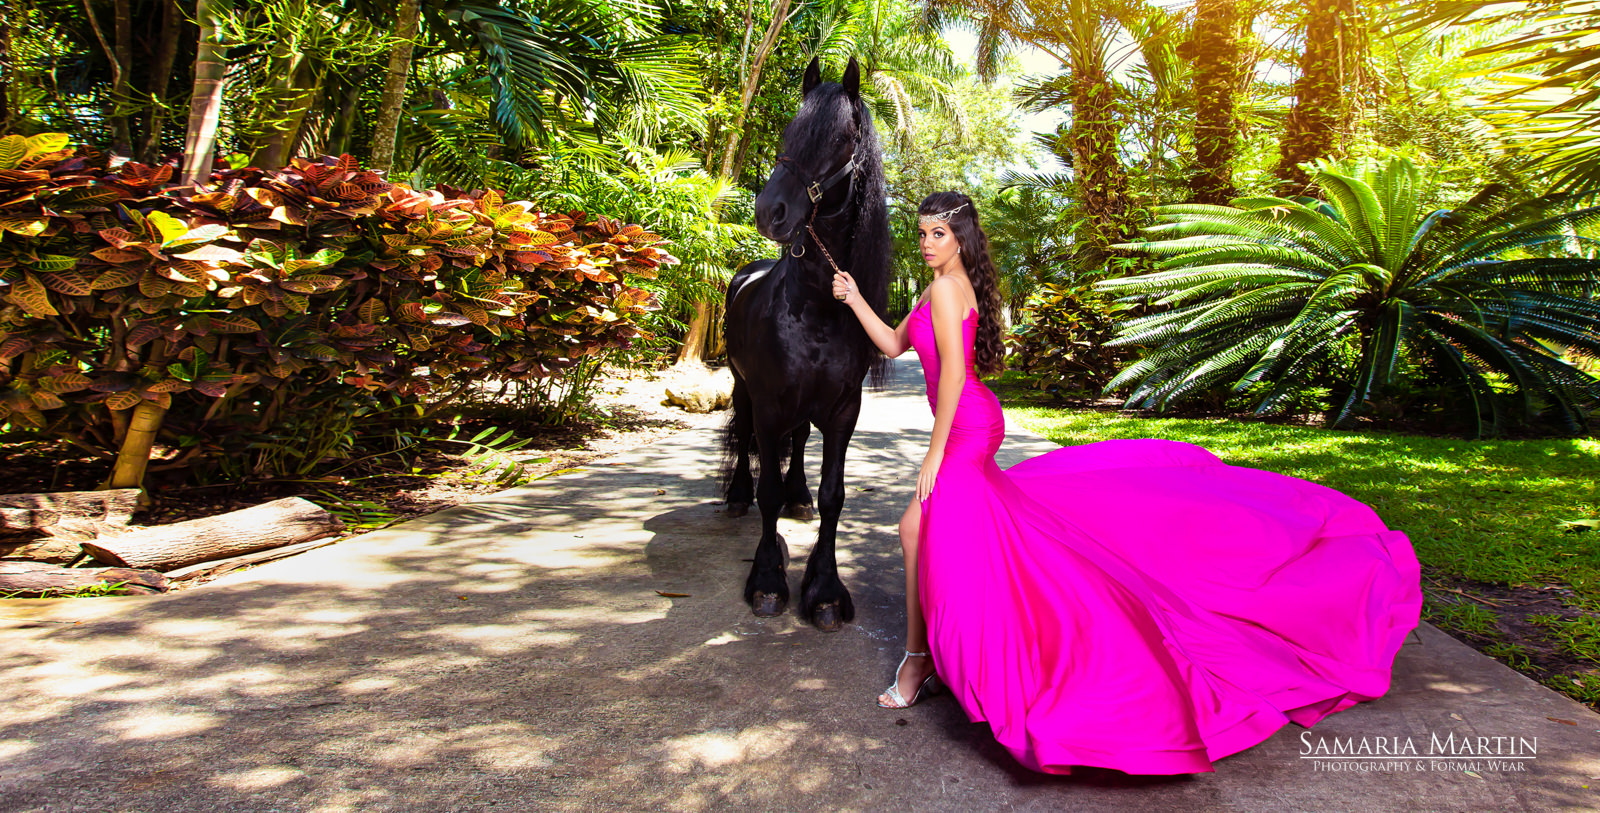 Gallery – Women, Pinkhorses. Quinceanera. Gallery – Women, Pinkhorses.  charro quincean…